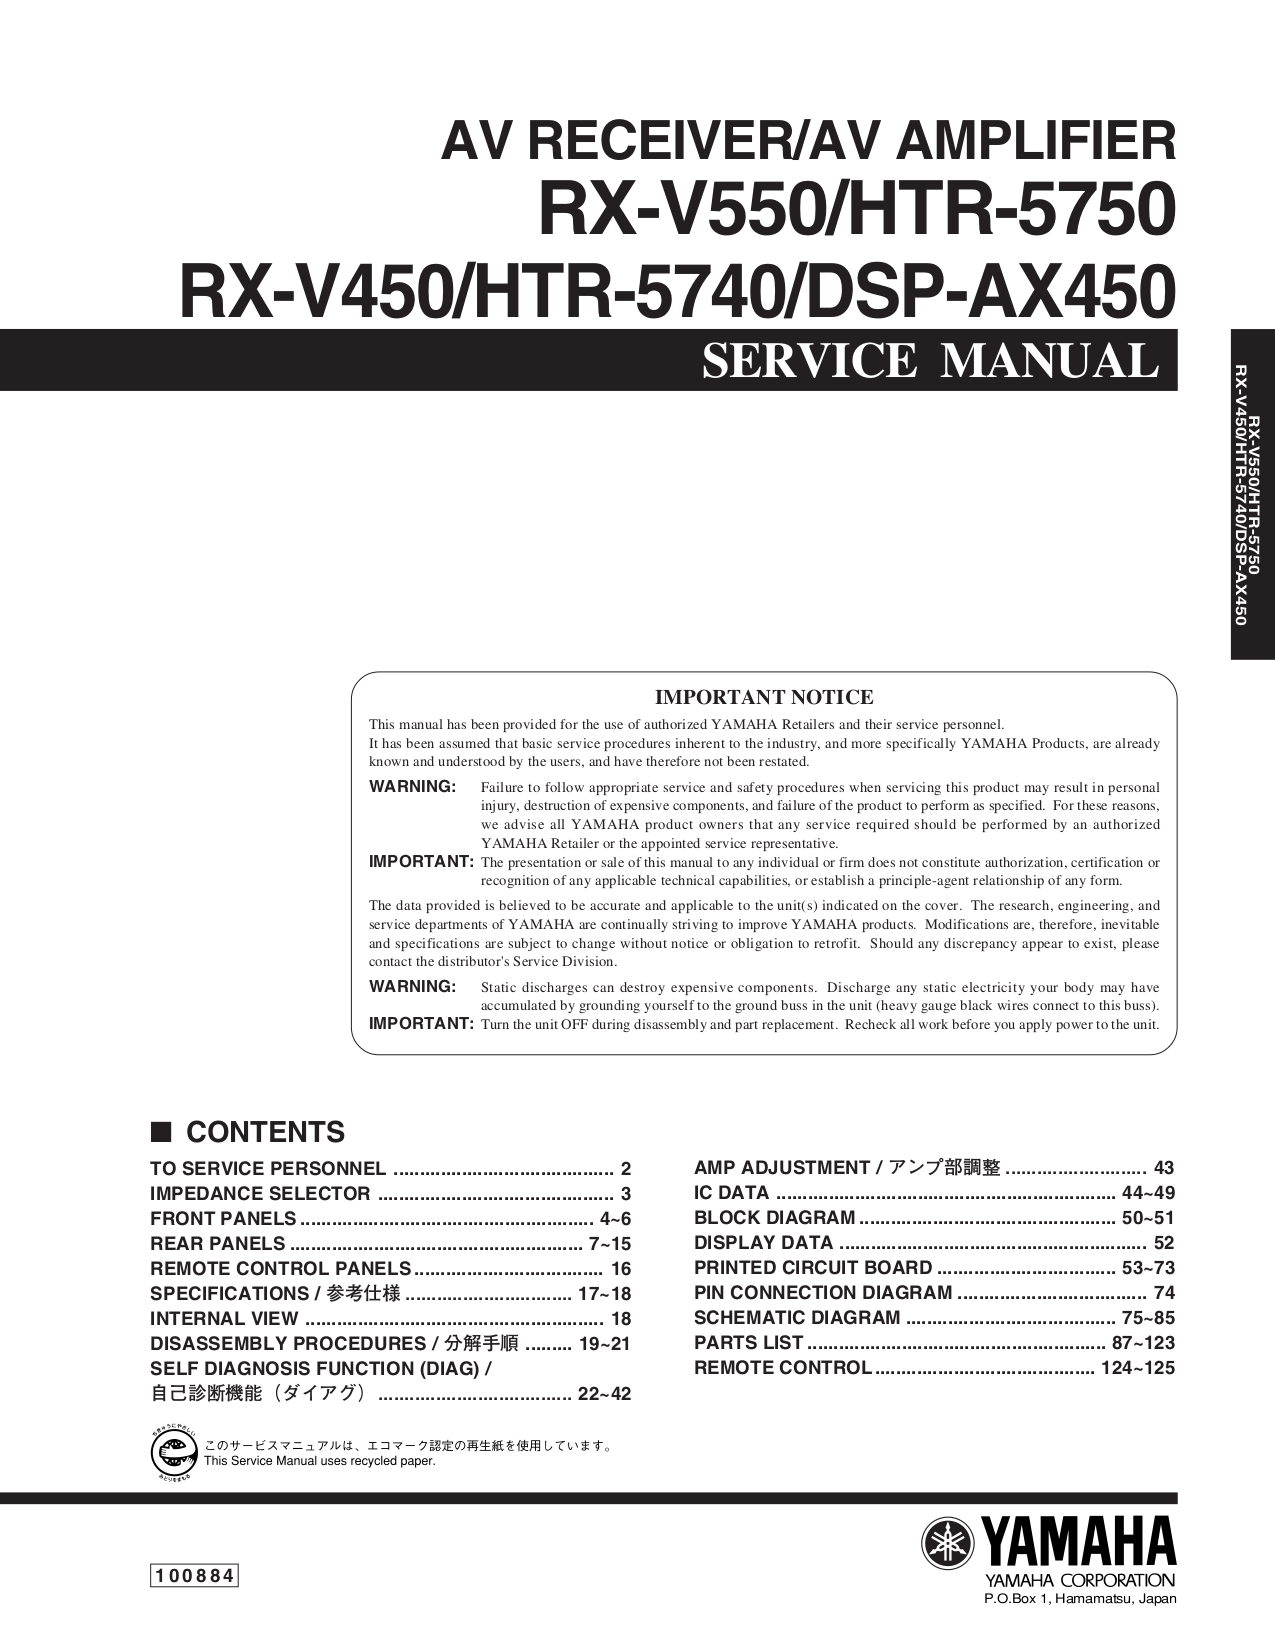 Yamaha Rx-V457 Инструкция.Rar